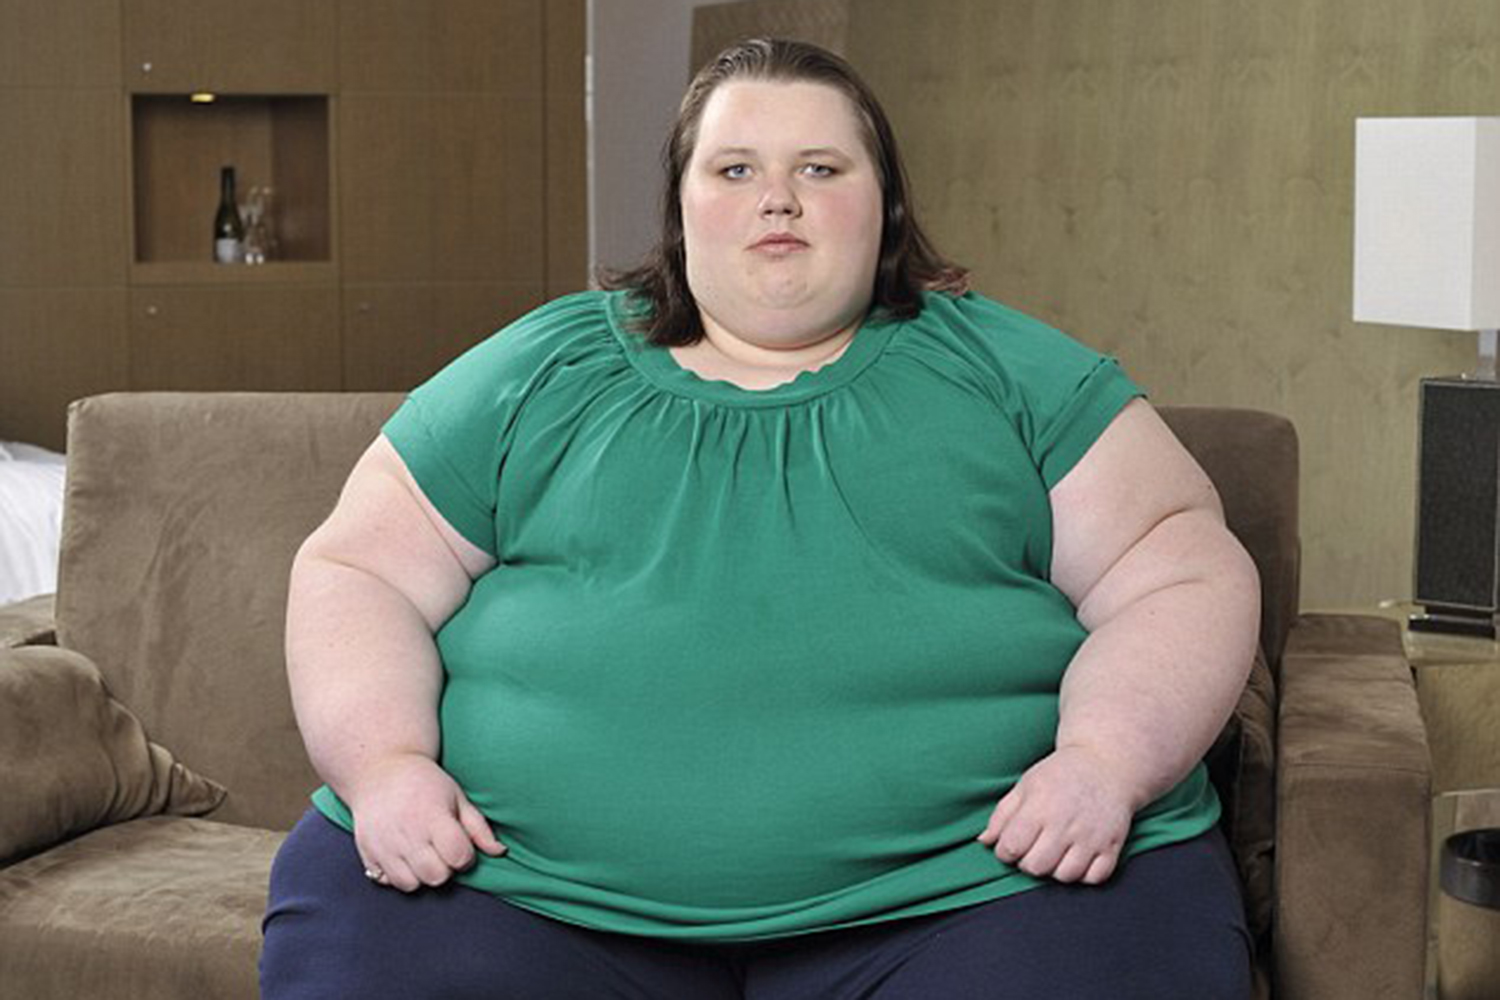 Usan una grúa para sacar a una mujer de 381 kilos de su casa en Gales